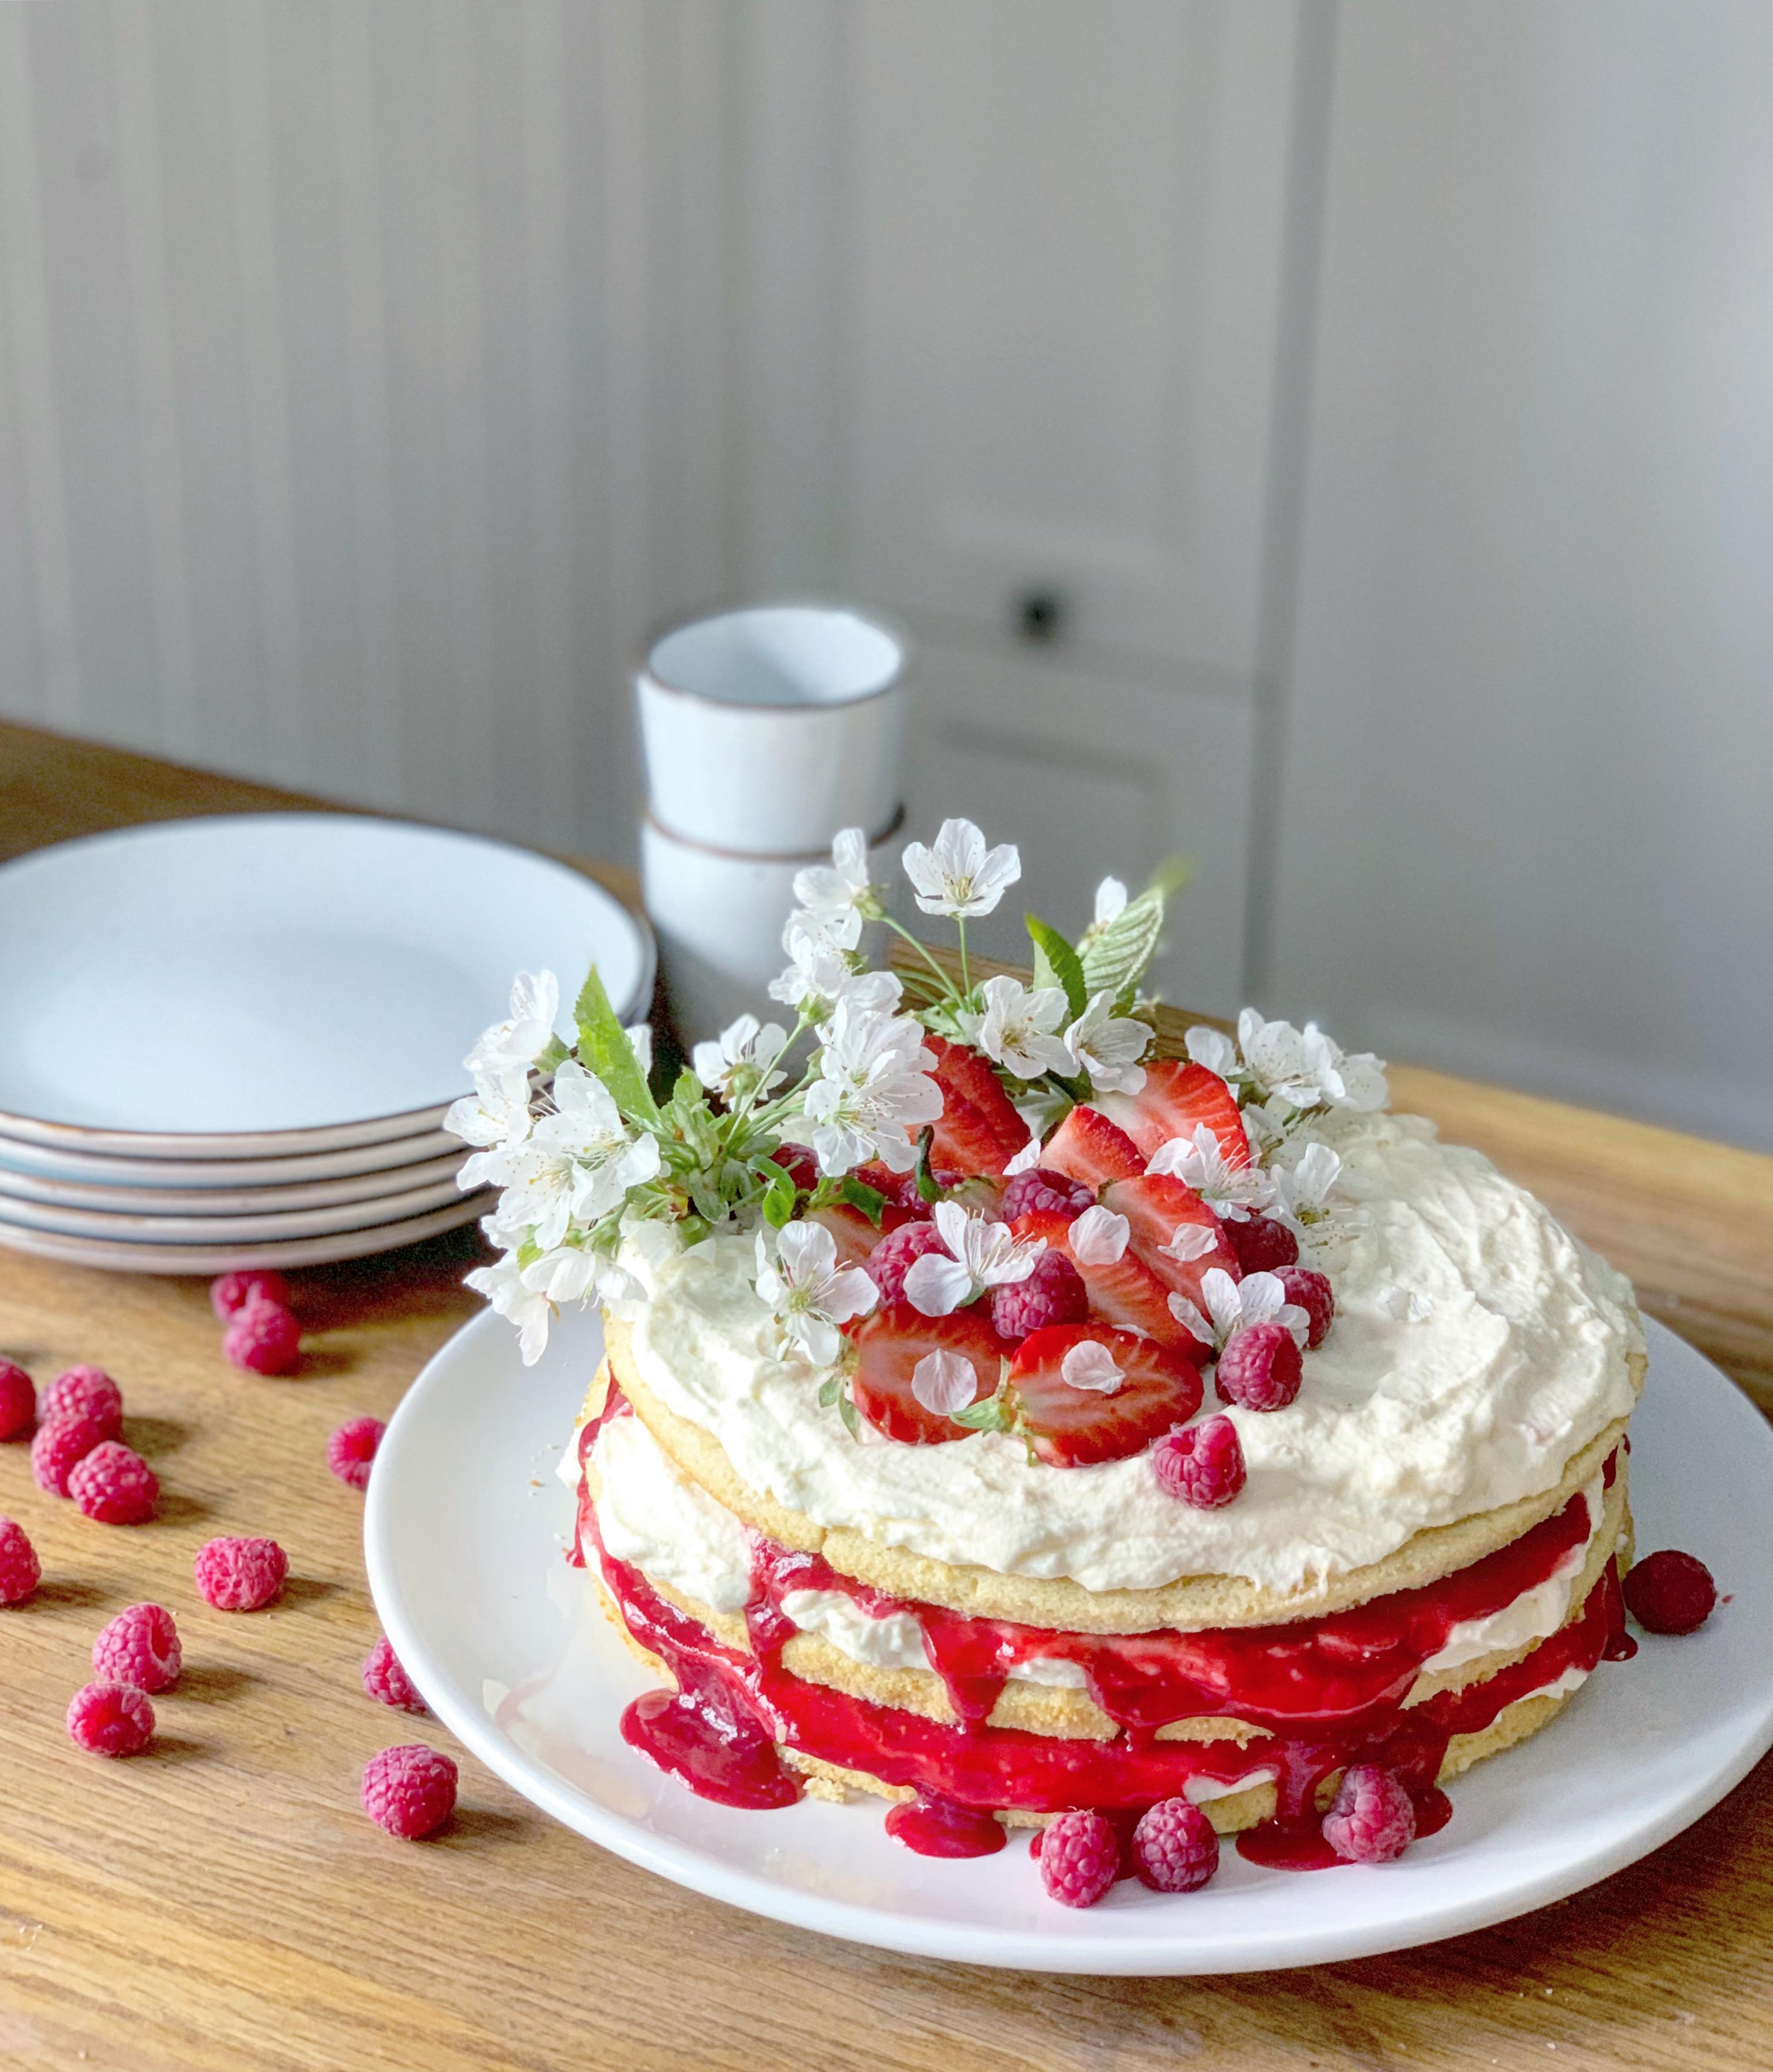 Heute ist ein ganz besonderer Tag!🌸🎂Blumen und Kuchen gehören dazu! #geburtstagstorte #torte #geburtstag #ostern #deko